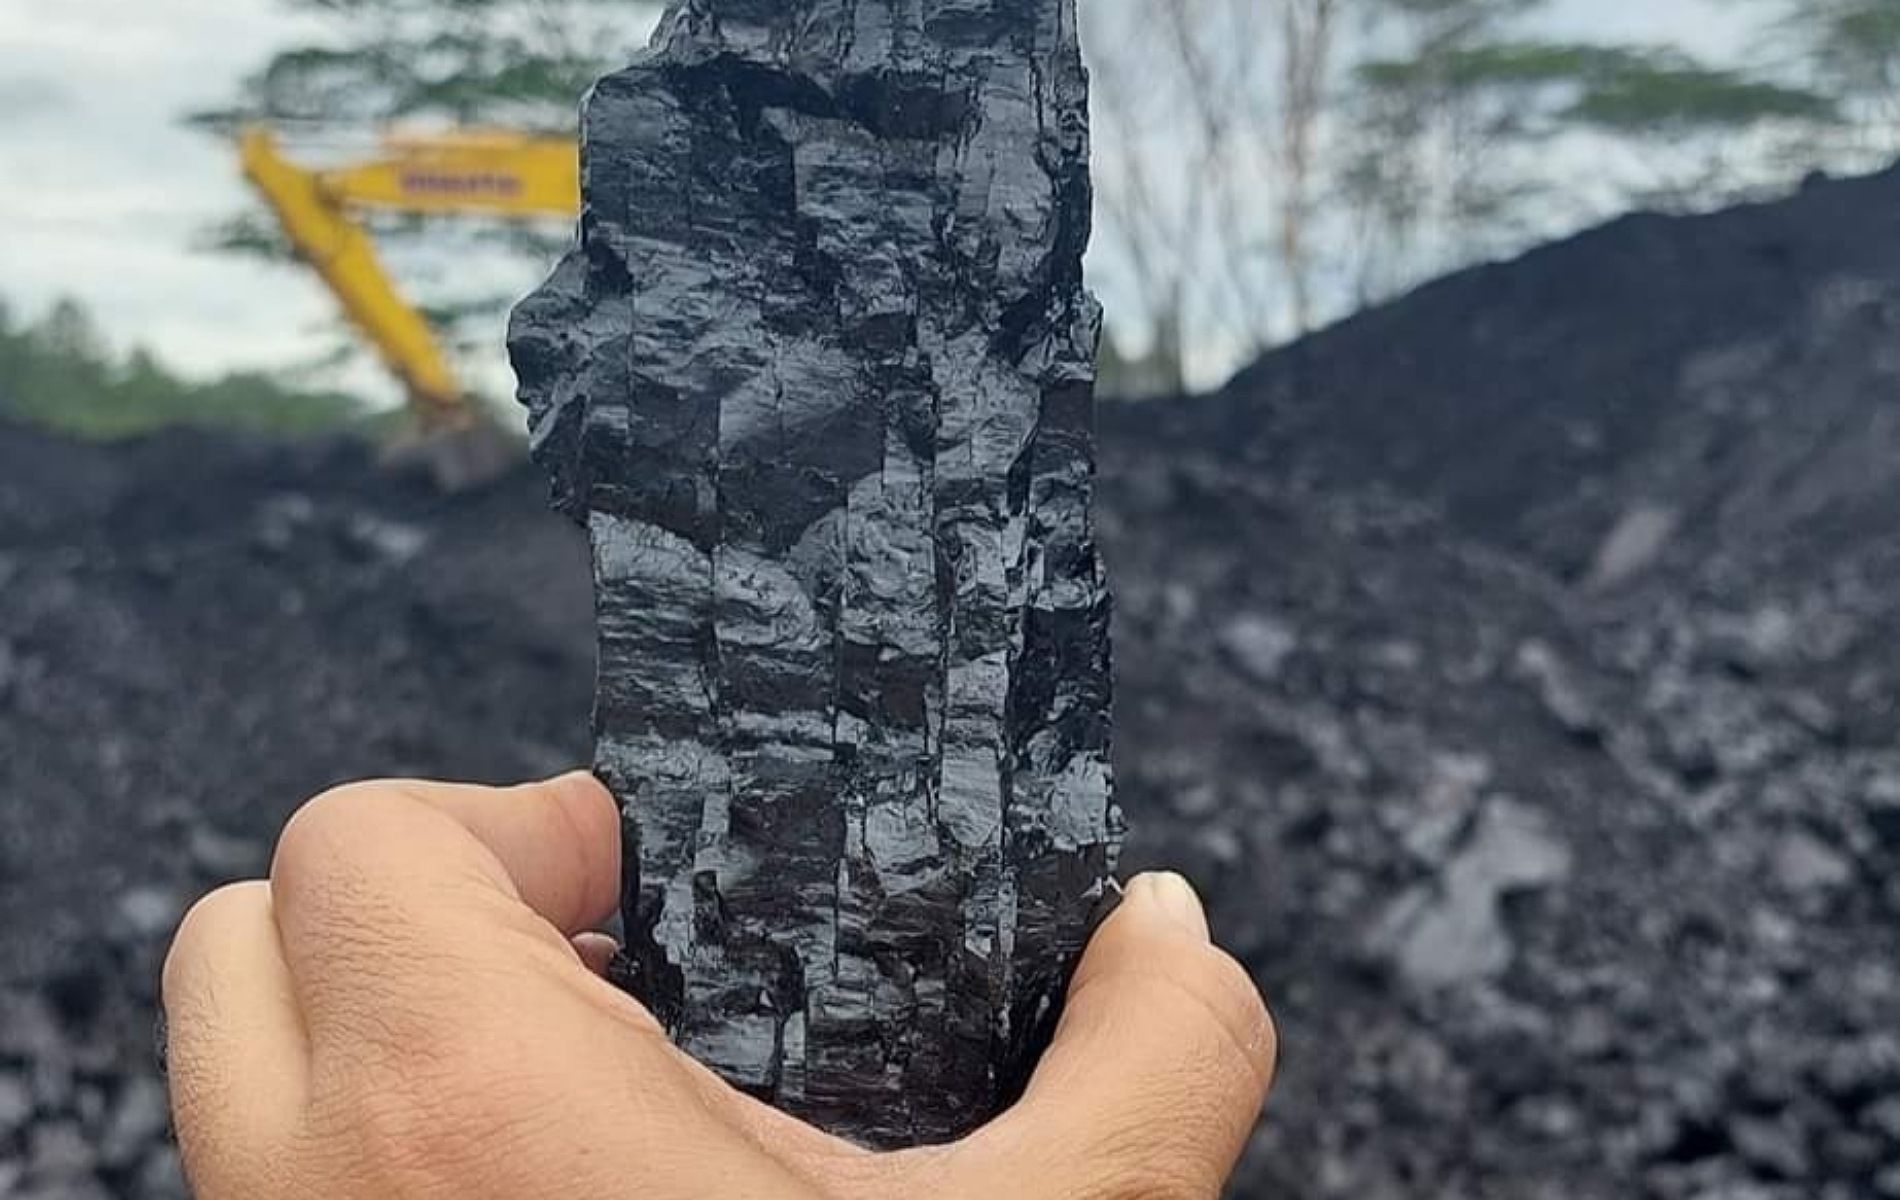 Batubara jenis antrasit keras dan mengkilap sebagai bongkahan batubara yang dibuat untuk berbagai sovenir unik